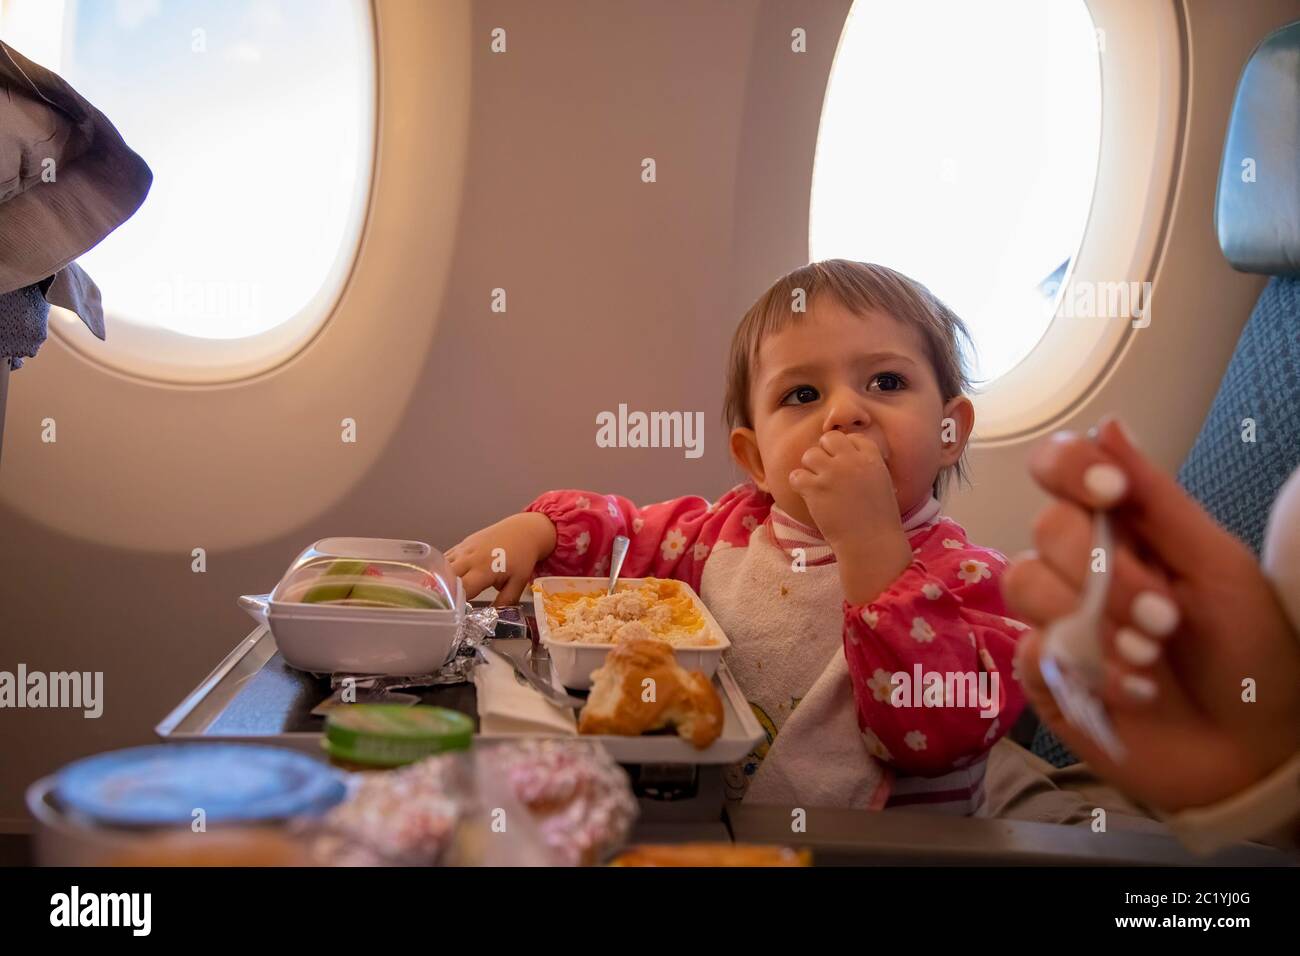 Niedliche Kleinkind Flugzeug Passagier isst spezielle Baby an Bord Mahlzeit Umfliegen Flug Stockfoto